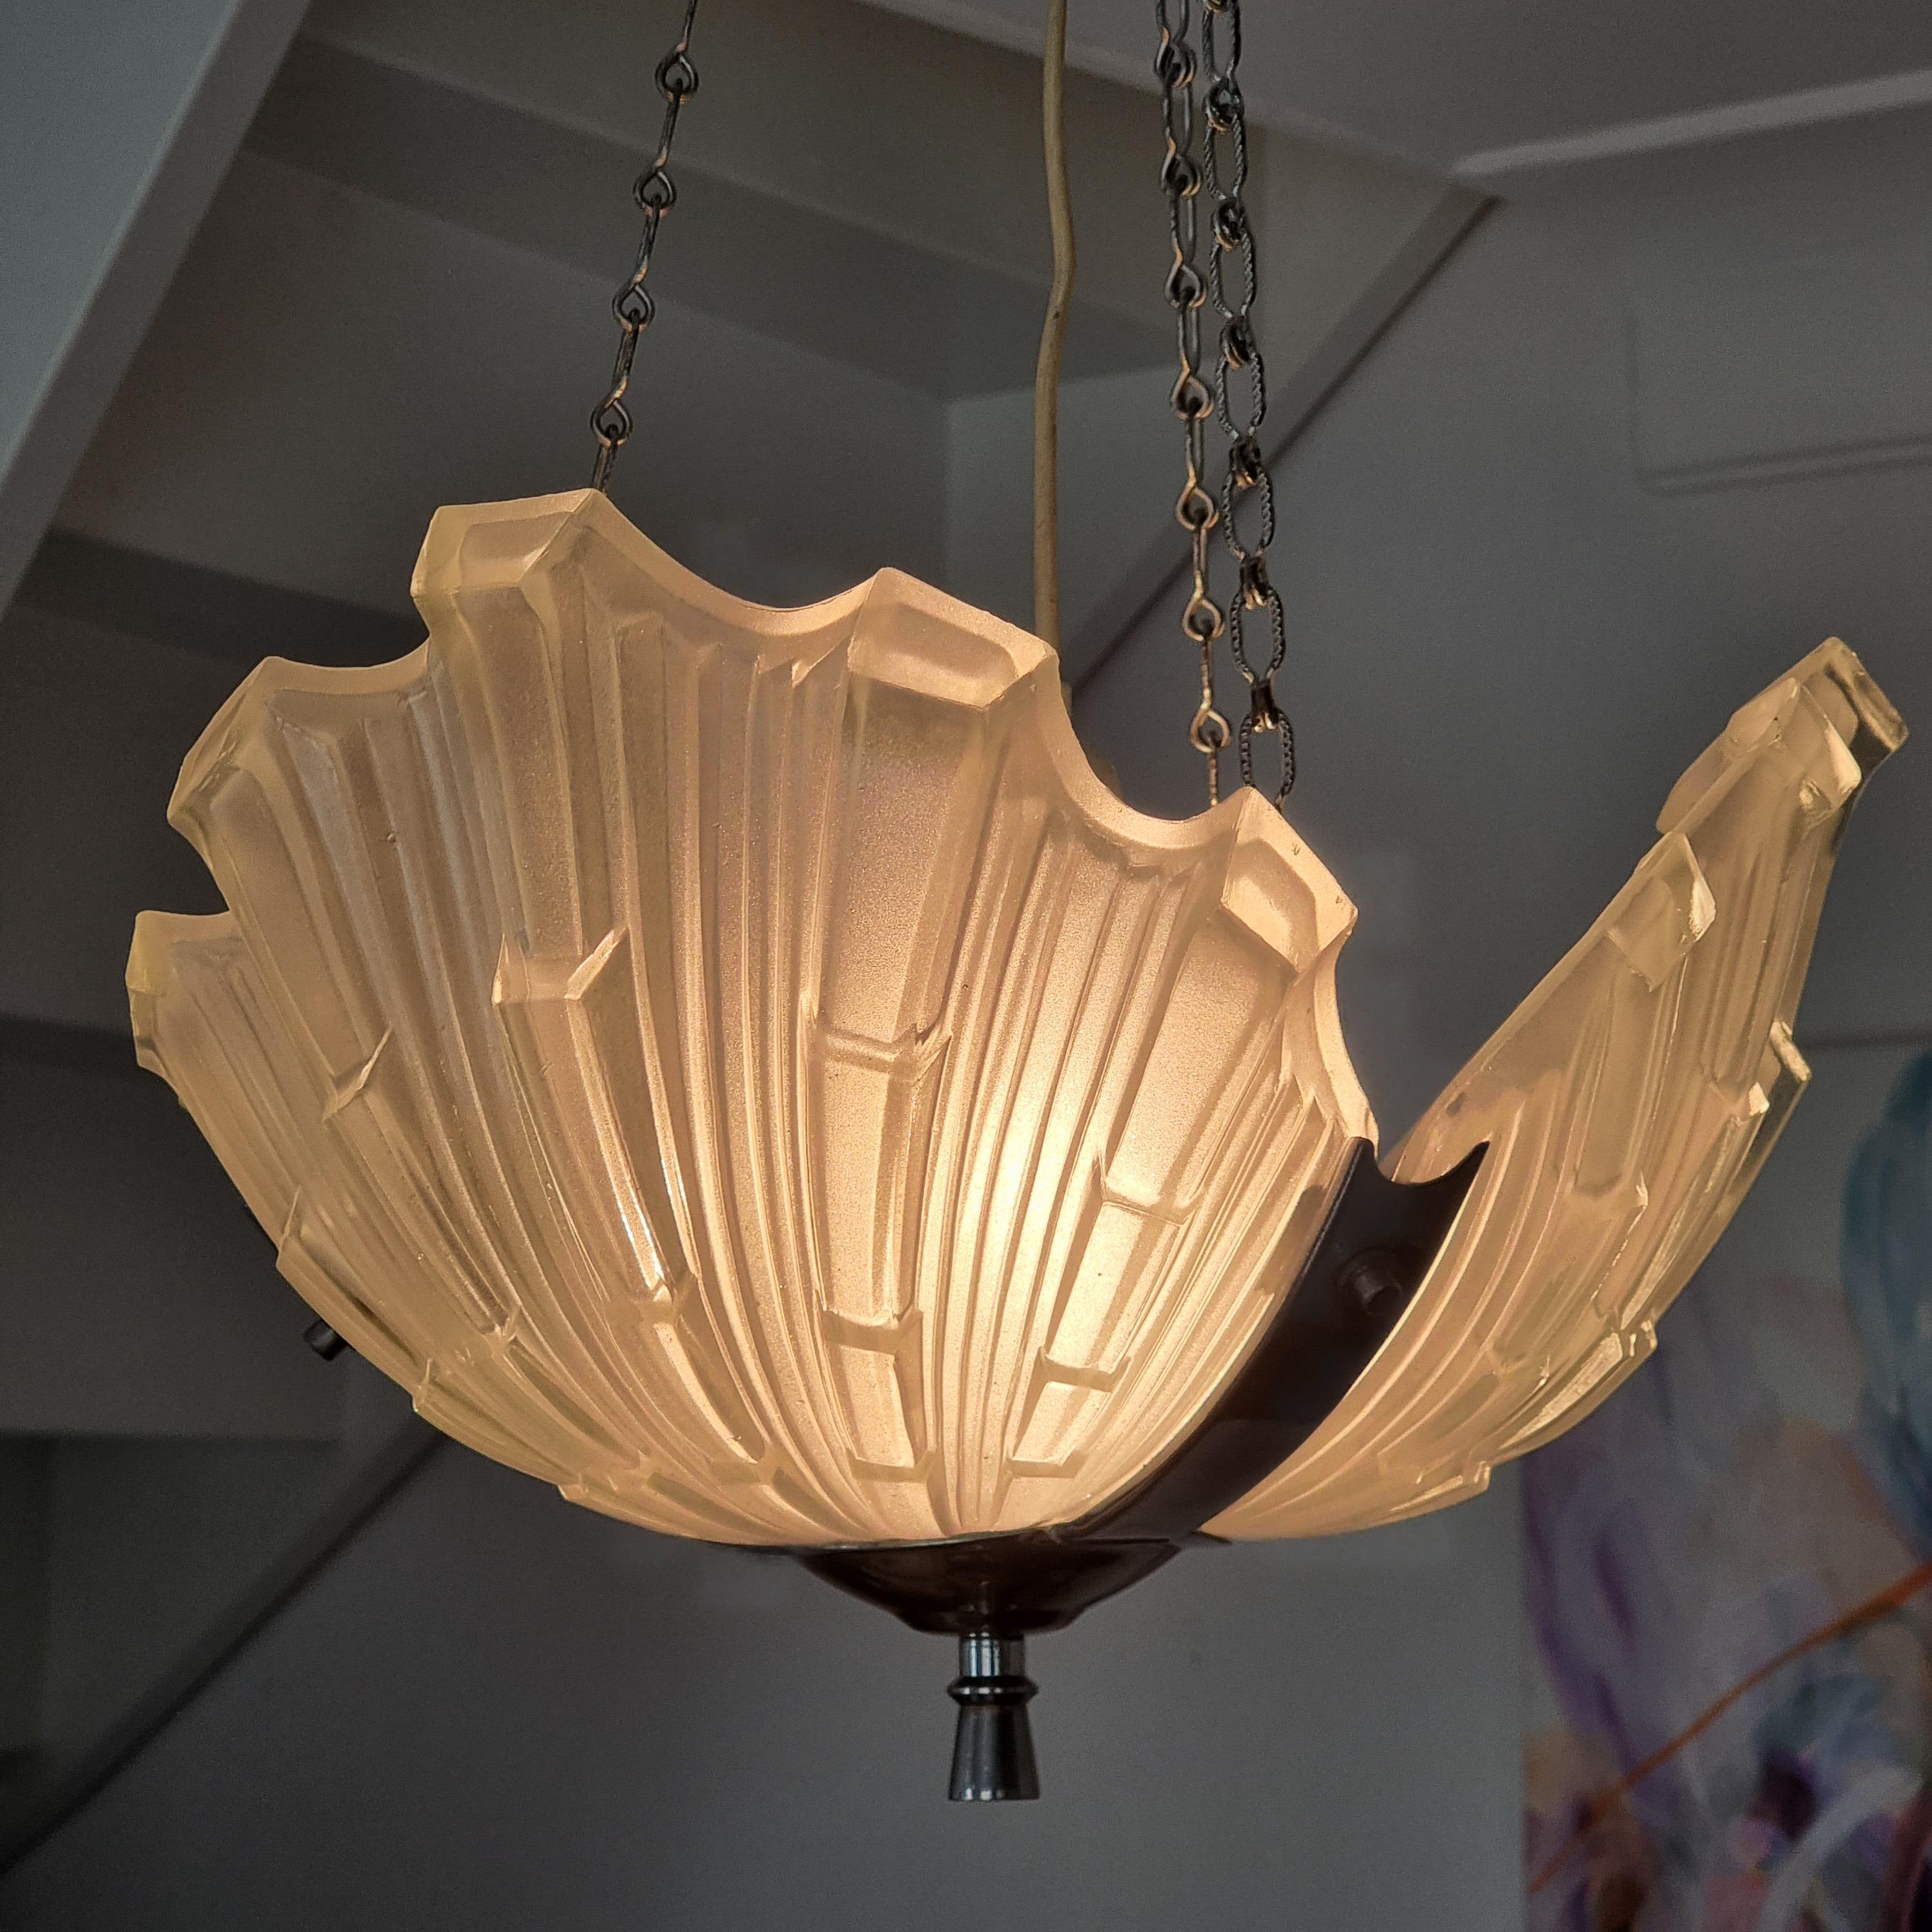 Lampe à suspension suédoise Grace/Art déco, abat-jour en verre en forme de chalumeau, avec provenance État moyen à Stockholm, SE